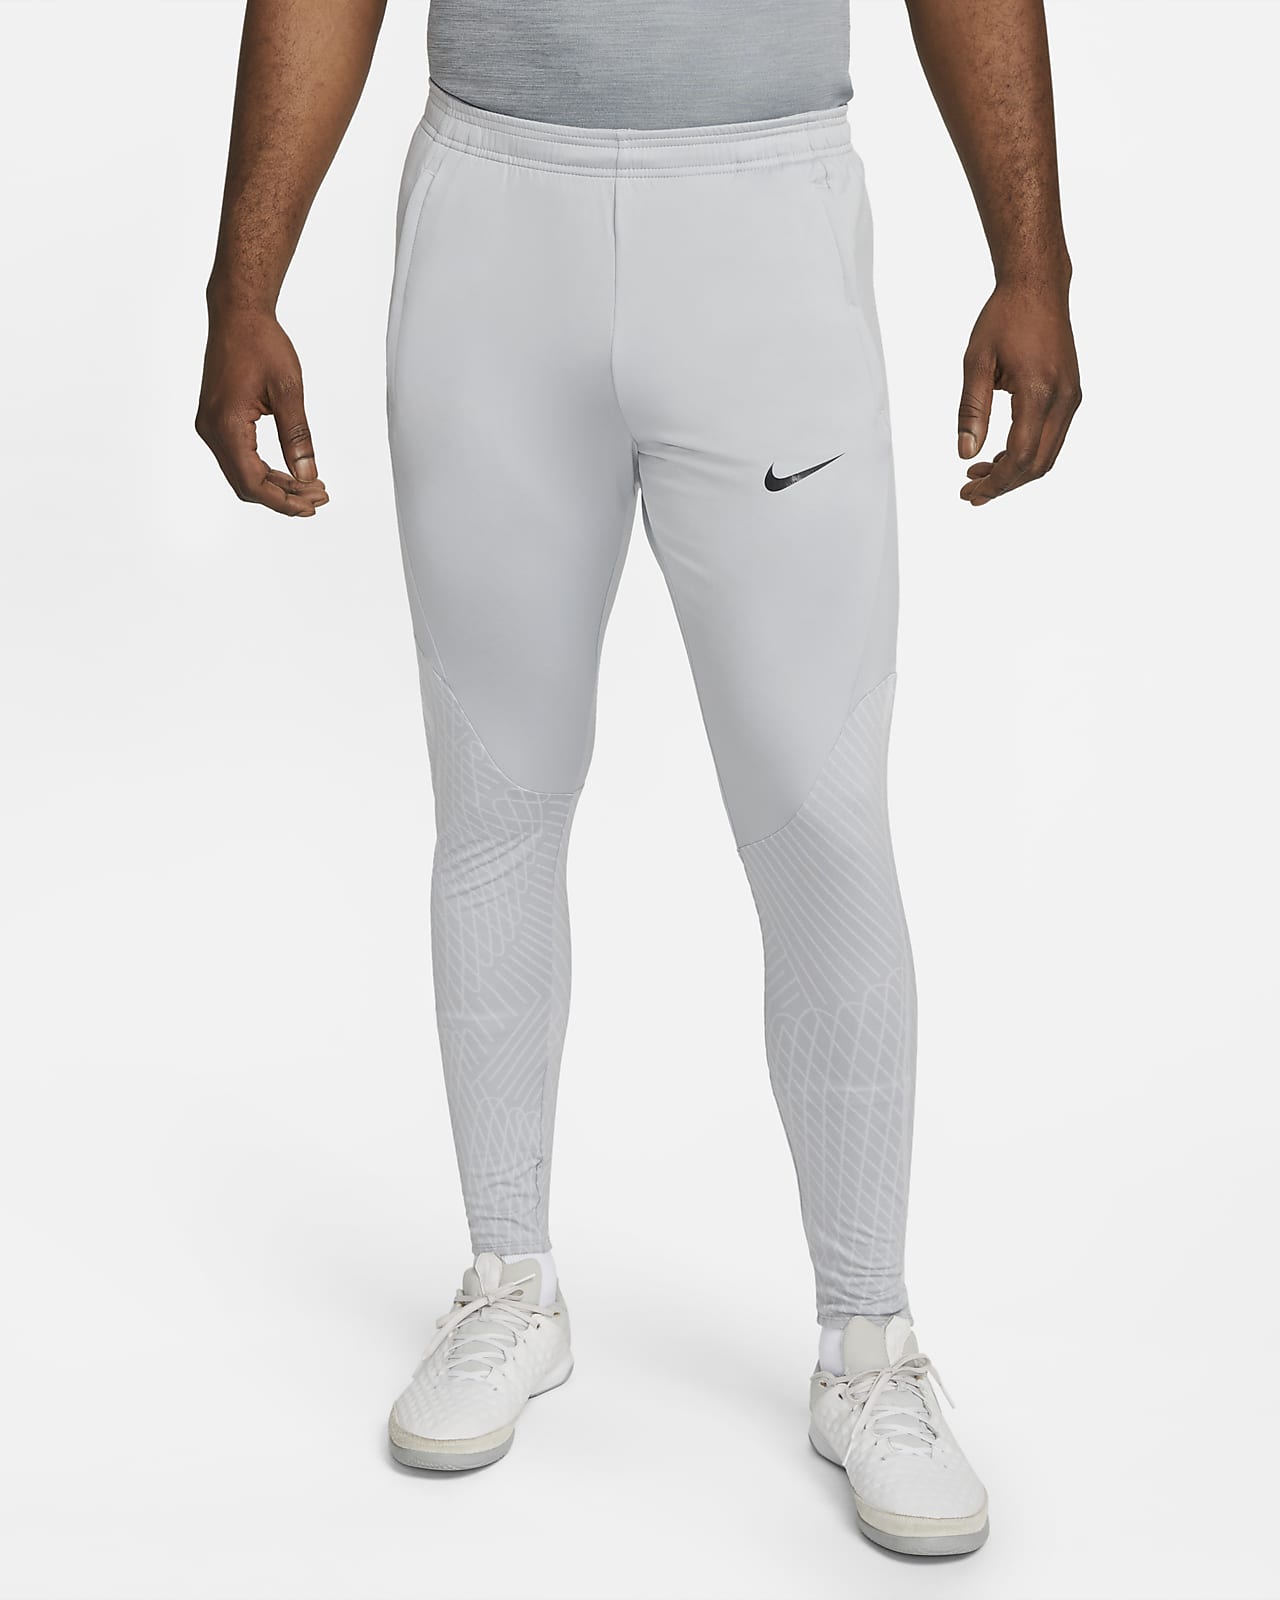 Nike Strike 22 DriFit Kids Training pants Black Dark Grey White   KNVBshopnl